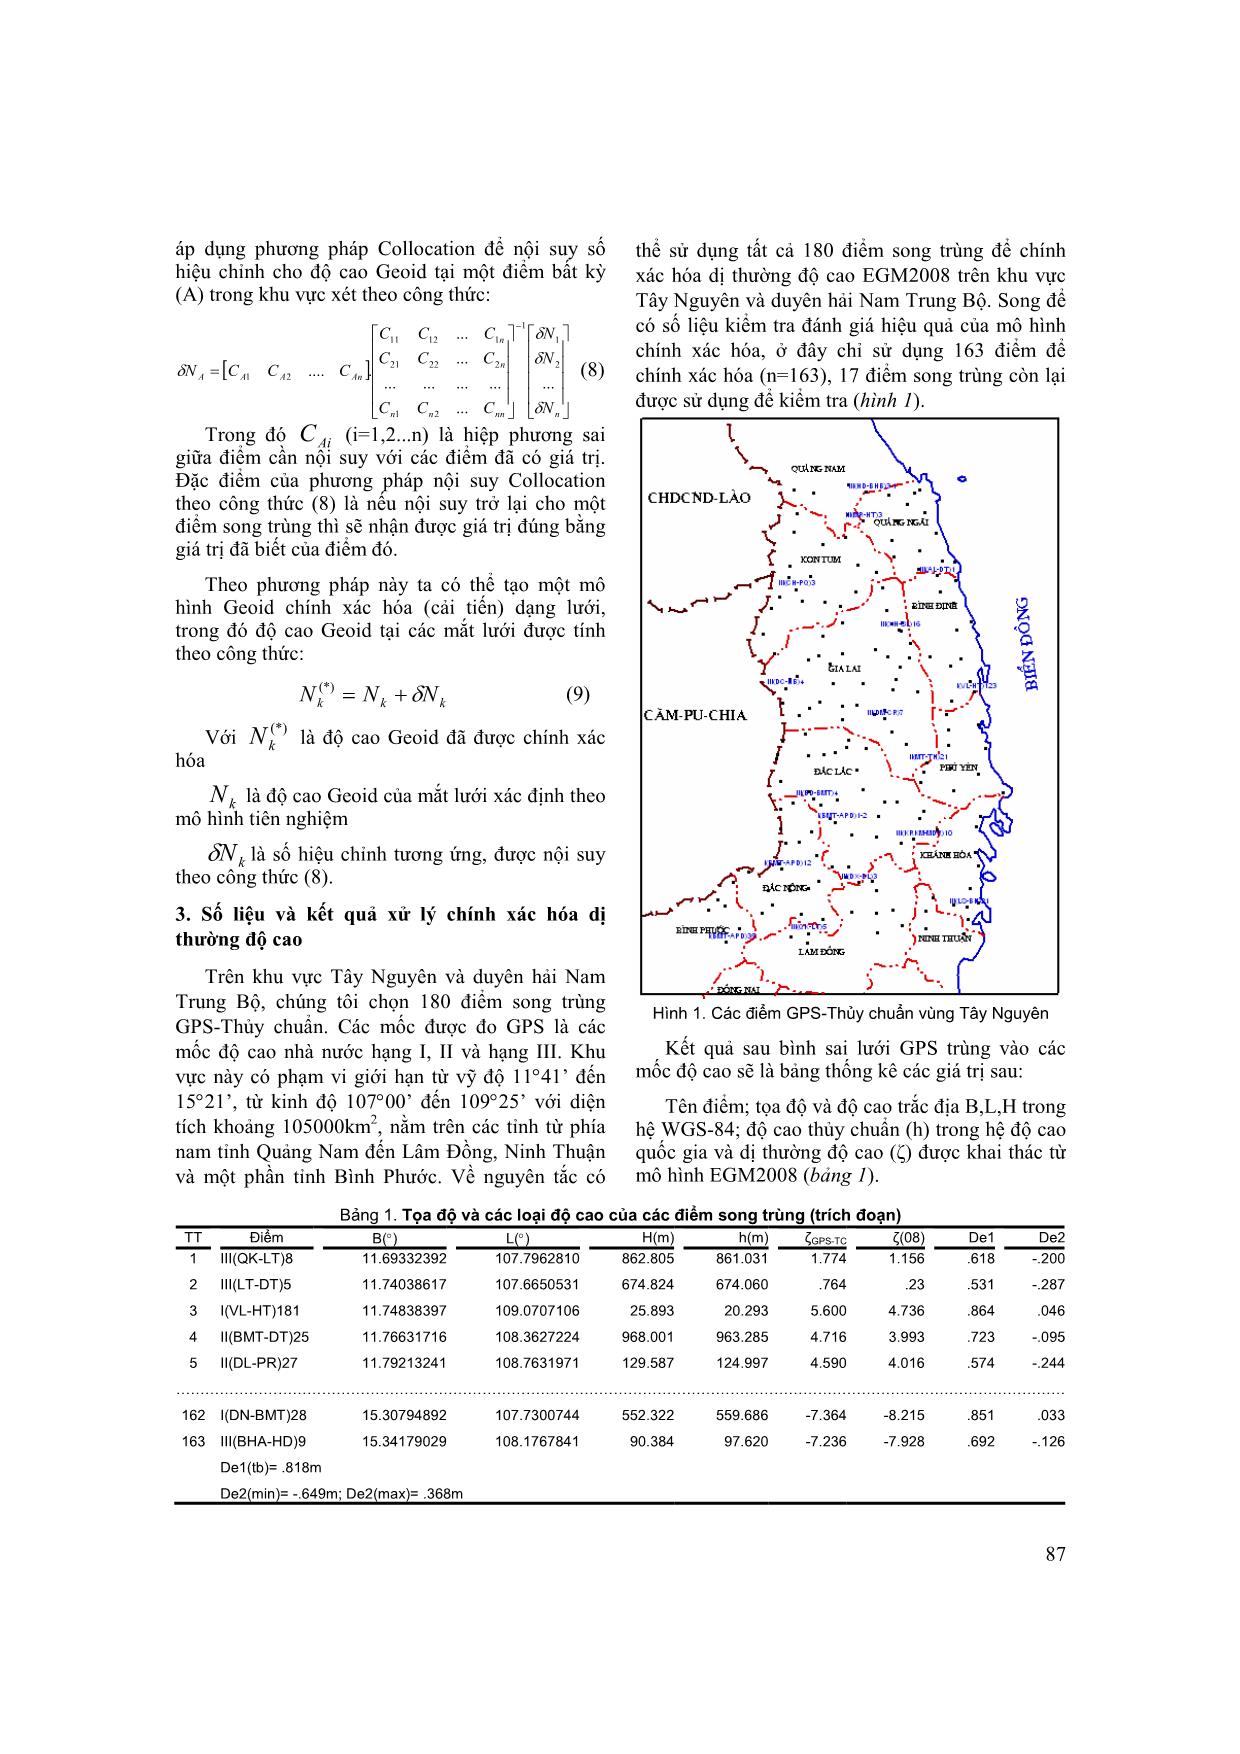 Chính xác hóa dị thường độ cao EGM2008 dựa trên số liệu GPS-thuỷ chuẩn trên phạm vi cục bộ vùng Tây Nguyên và duyên hải Nam Trung Bộ trang 3